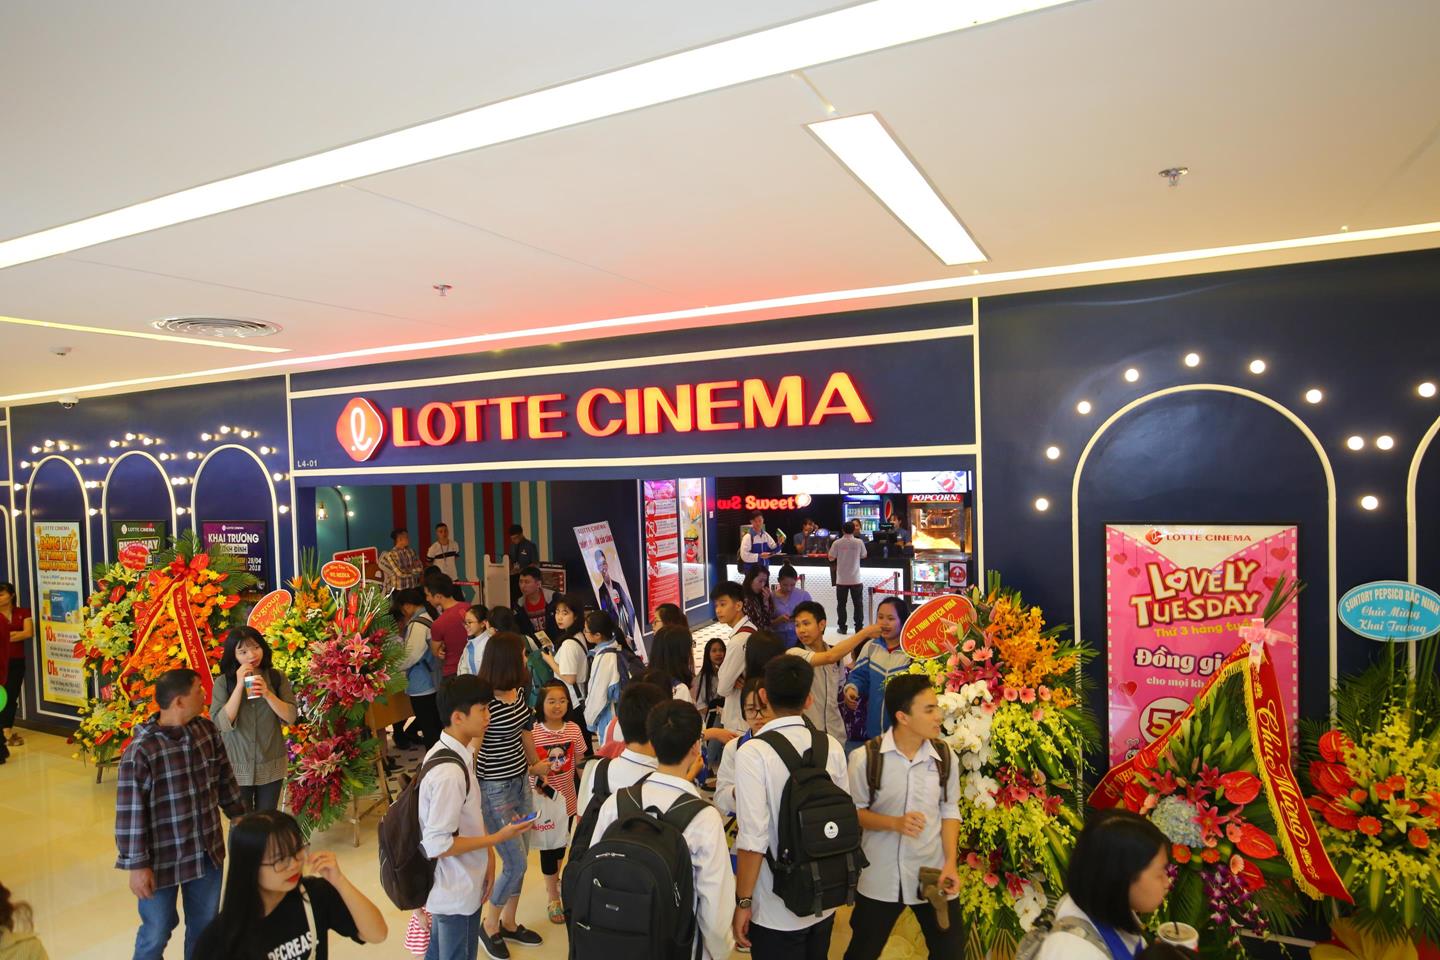 Hệ thống rạp chiếu film chuẩn quốc tế Lotte Cinema tại Vincom đặc biệt thu hút giới trẻ